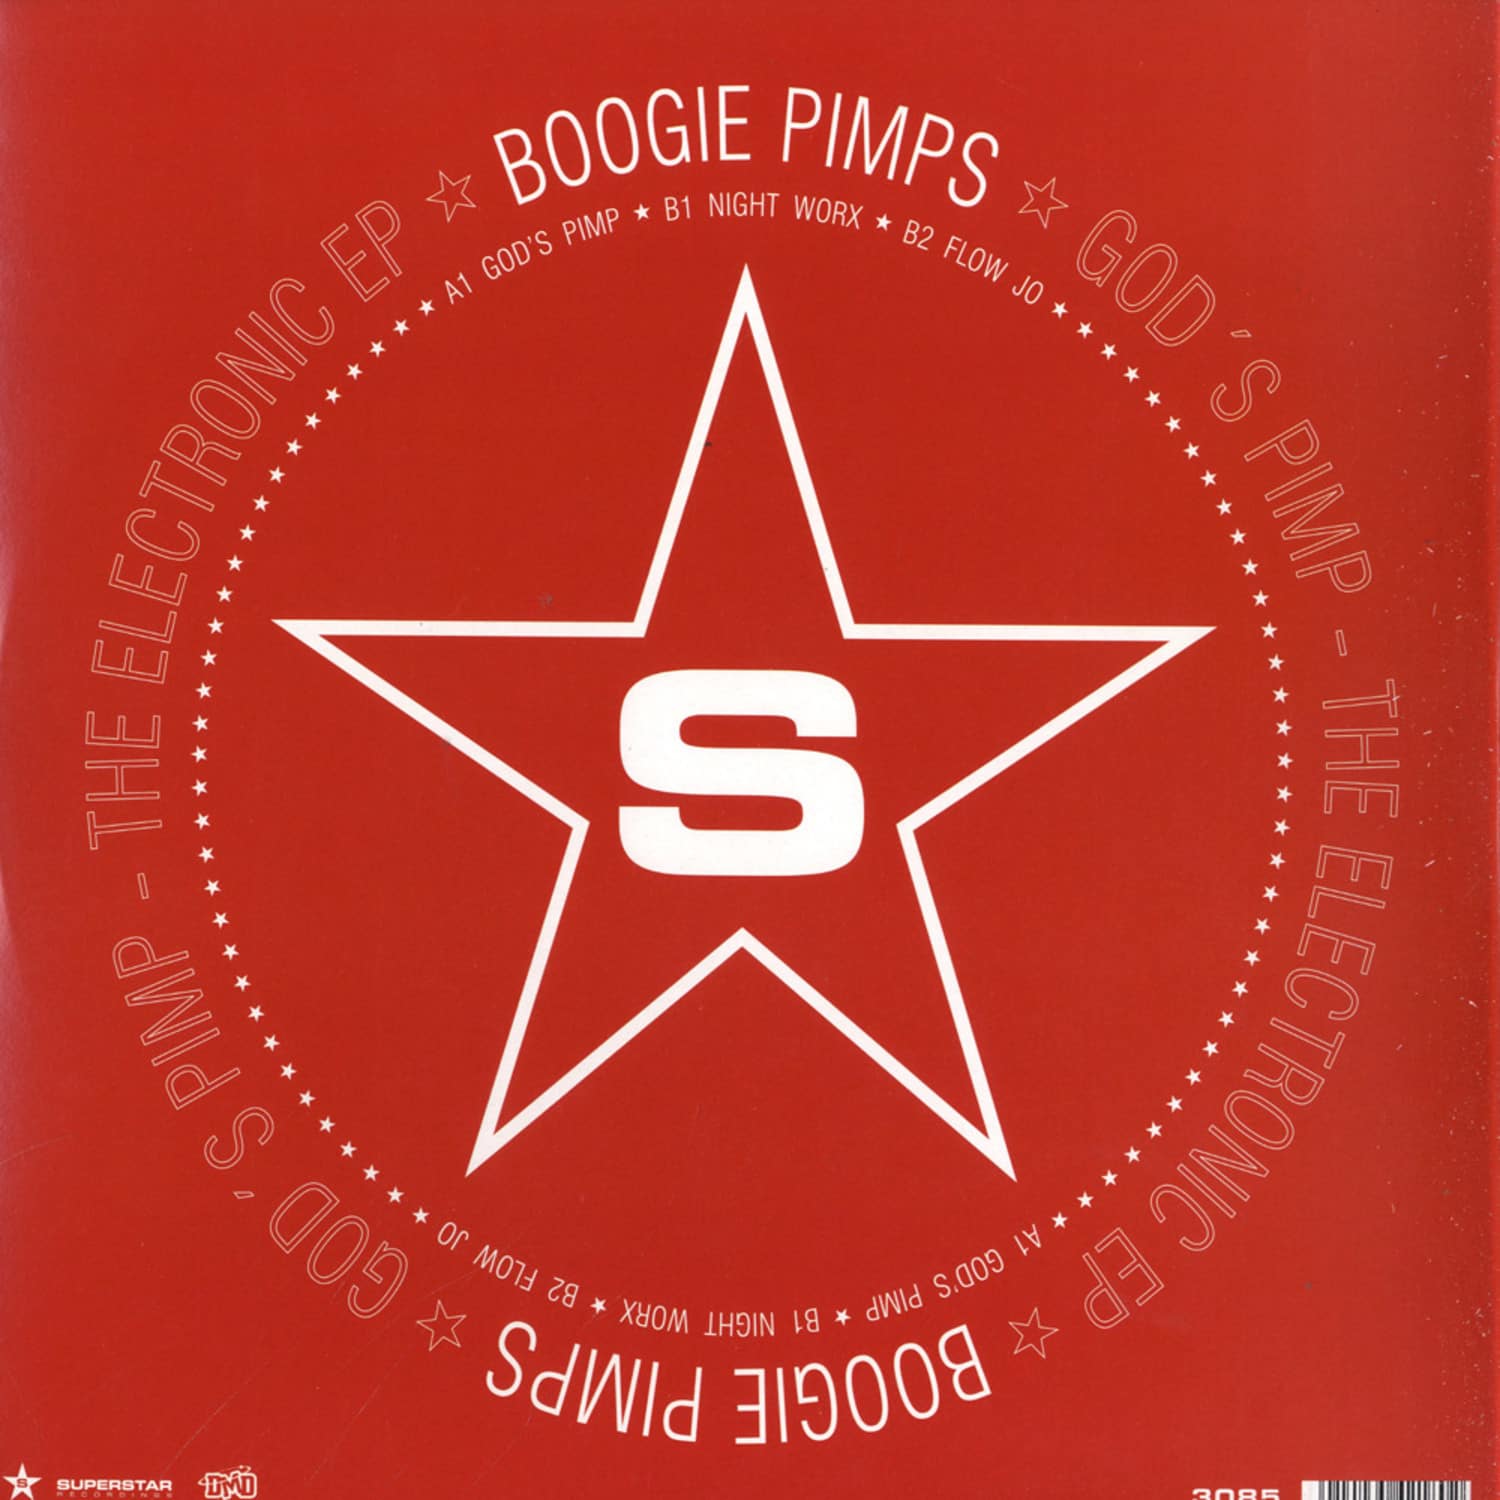 Boogie Pimps - GODS PIMP - THE ELECTRONIC EP